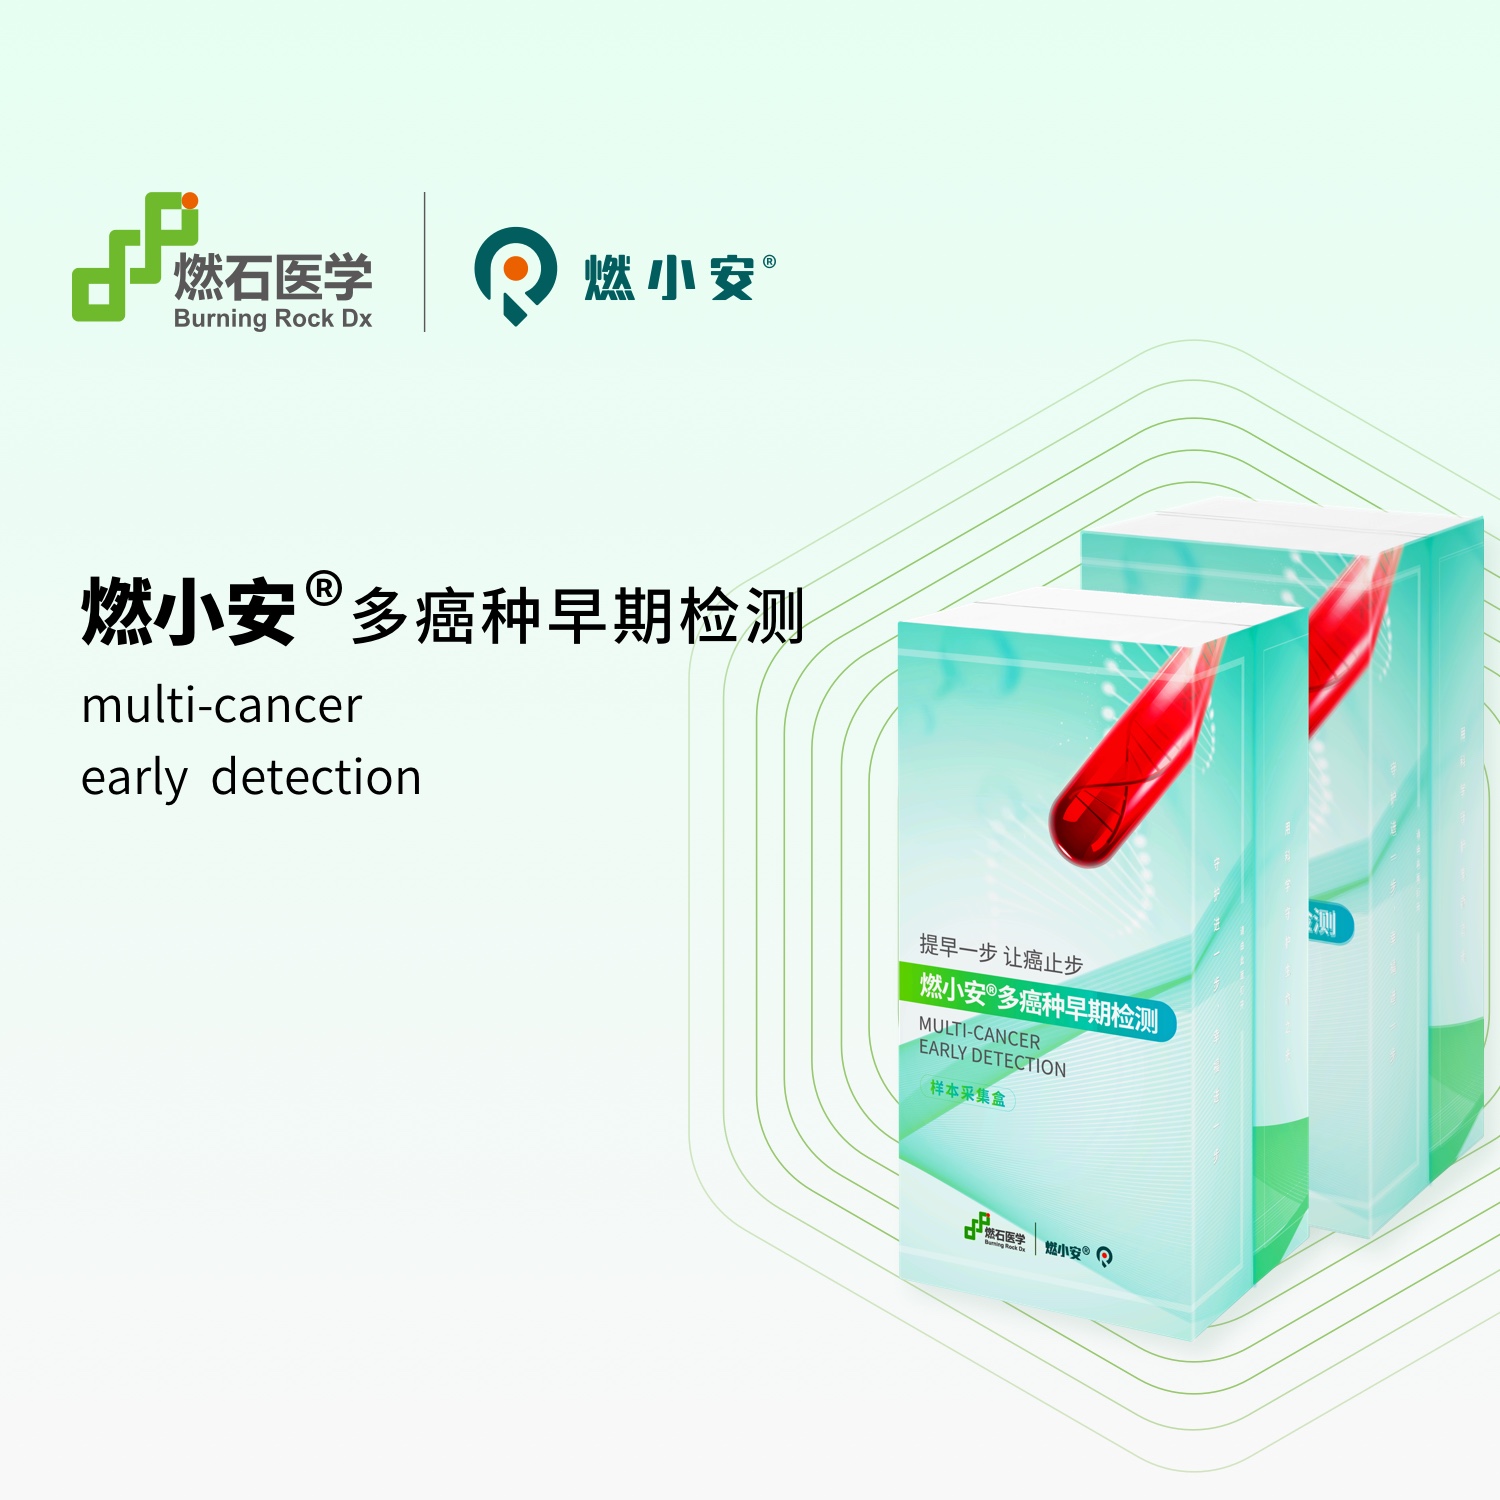 燃小安®-六癌种早期检测产品- 早筛网